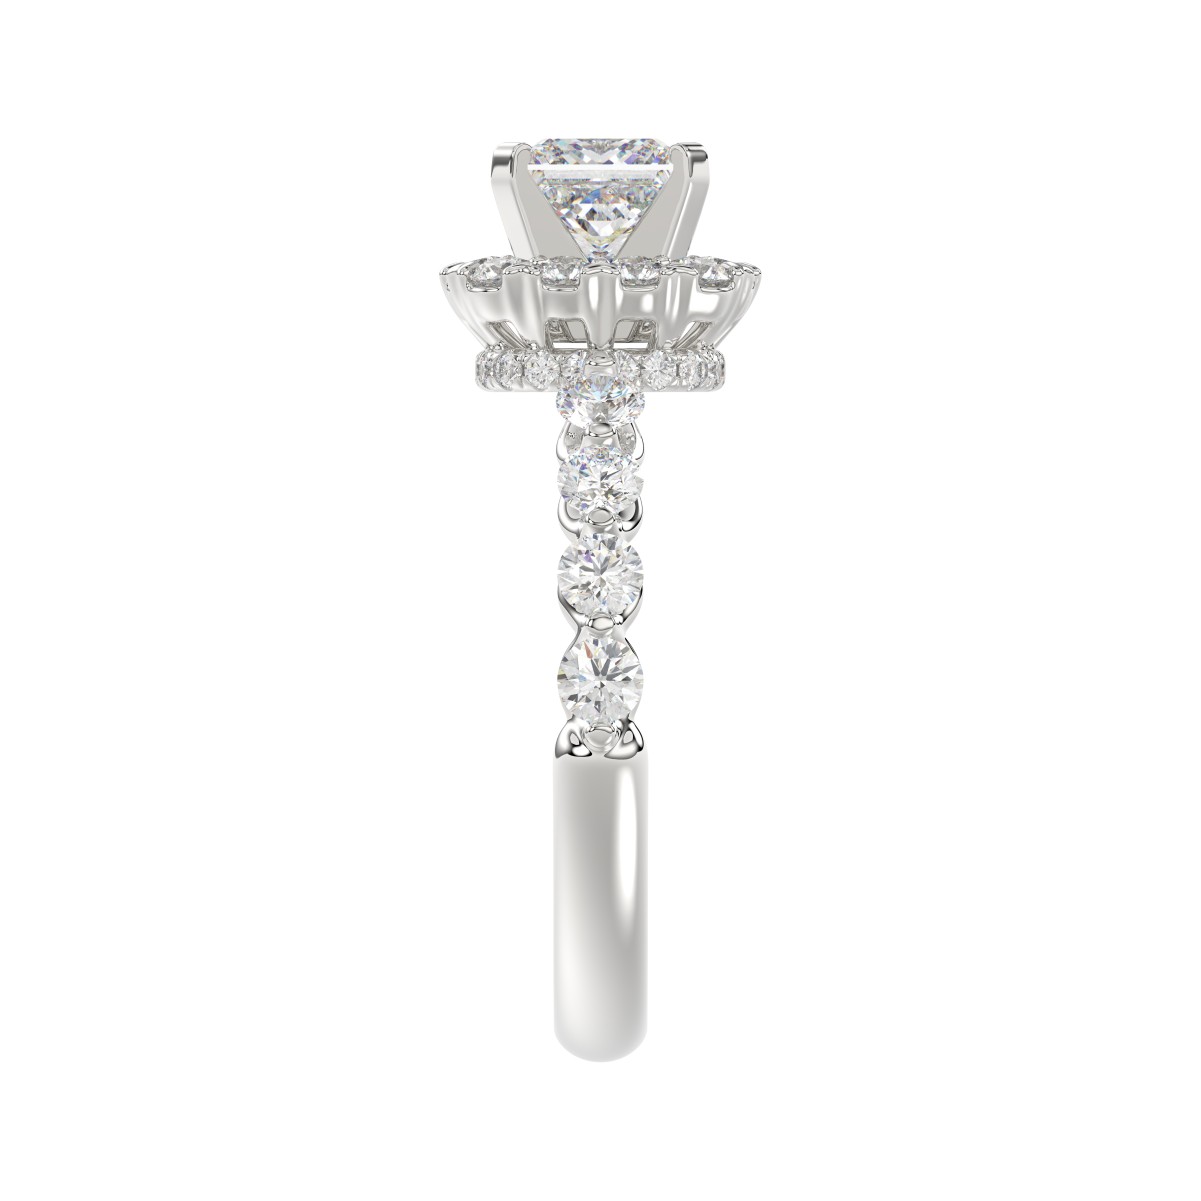 18K WHITE GOLD 2.00CT ROUND/PRINCESS DIAMOND SEMI MOUNT LADIES RING (CENTER STONE PRINCESS DIAMOND 1.00CT)